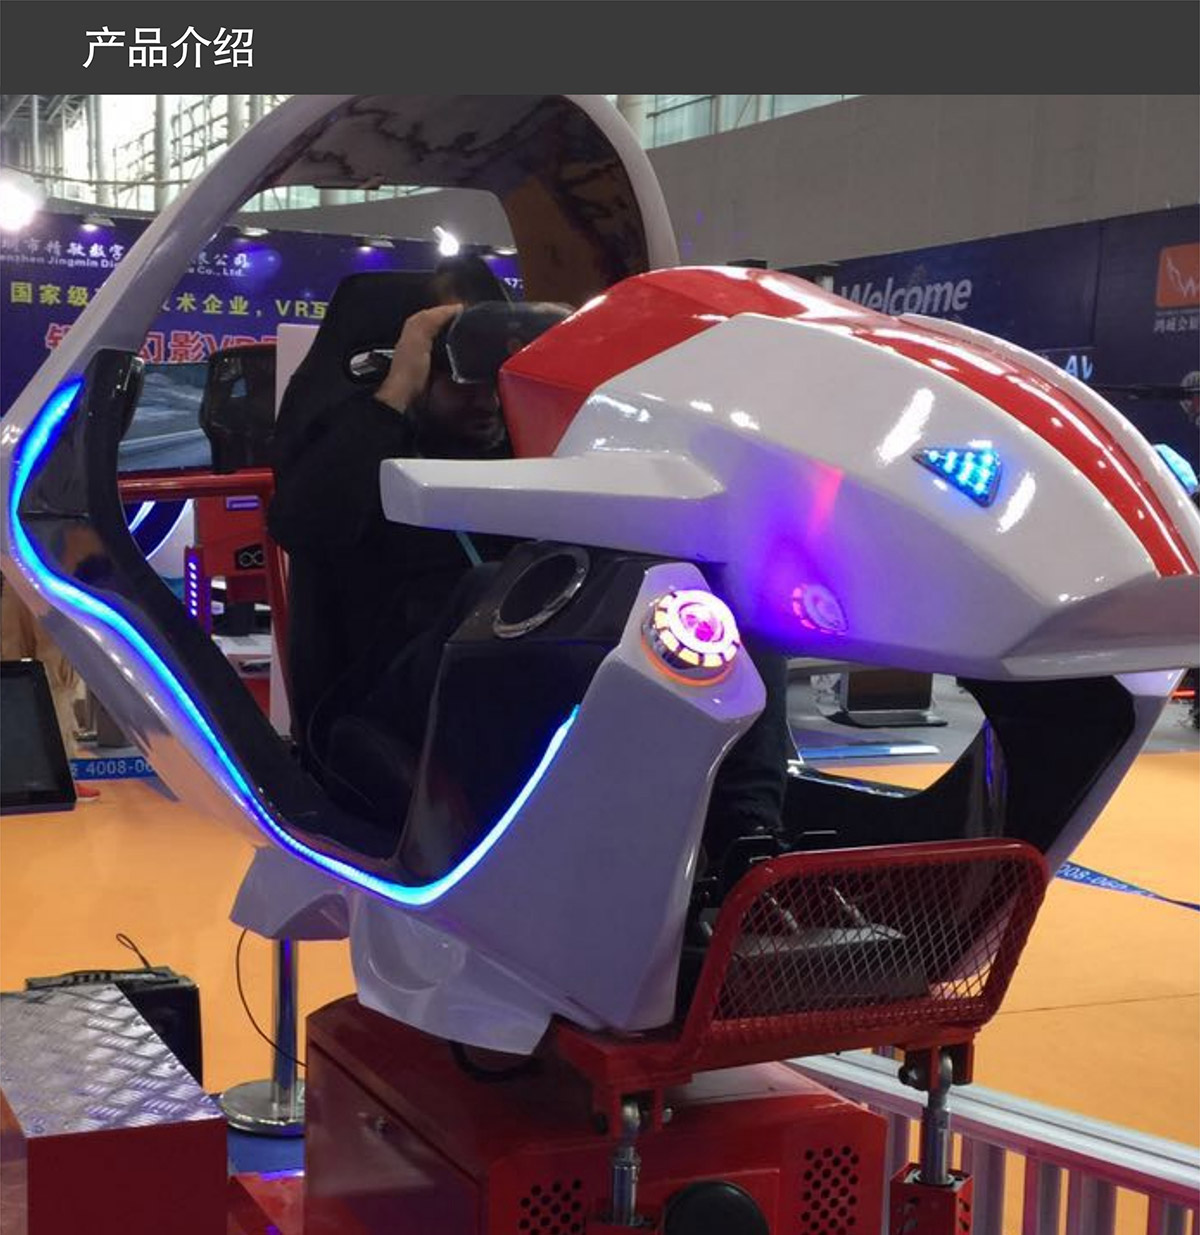 社区安全VR飞行赛车产品介绍.jpg